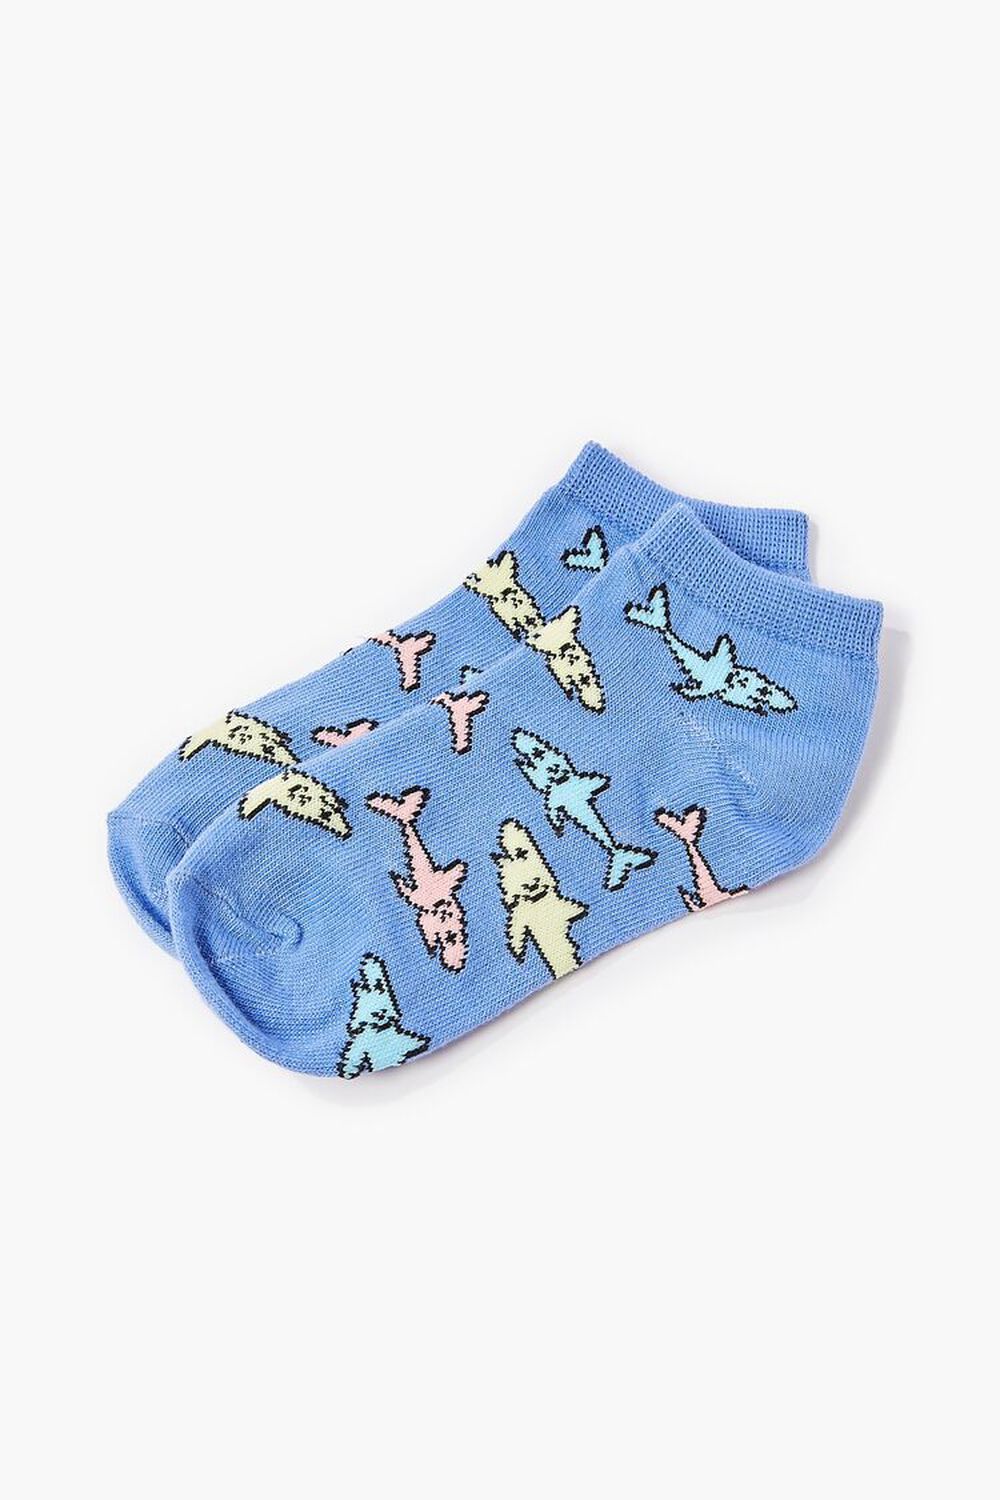 Kids Shark Print Ankle Socks (Girls + Boys), image 1